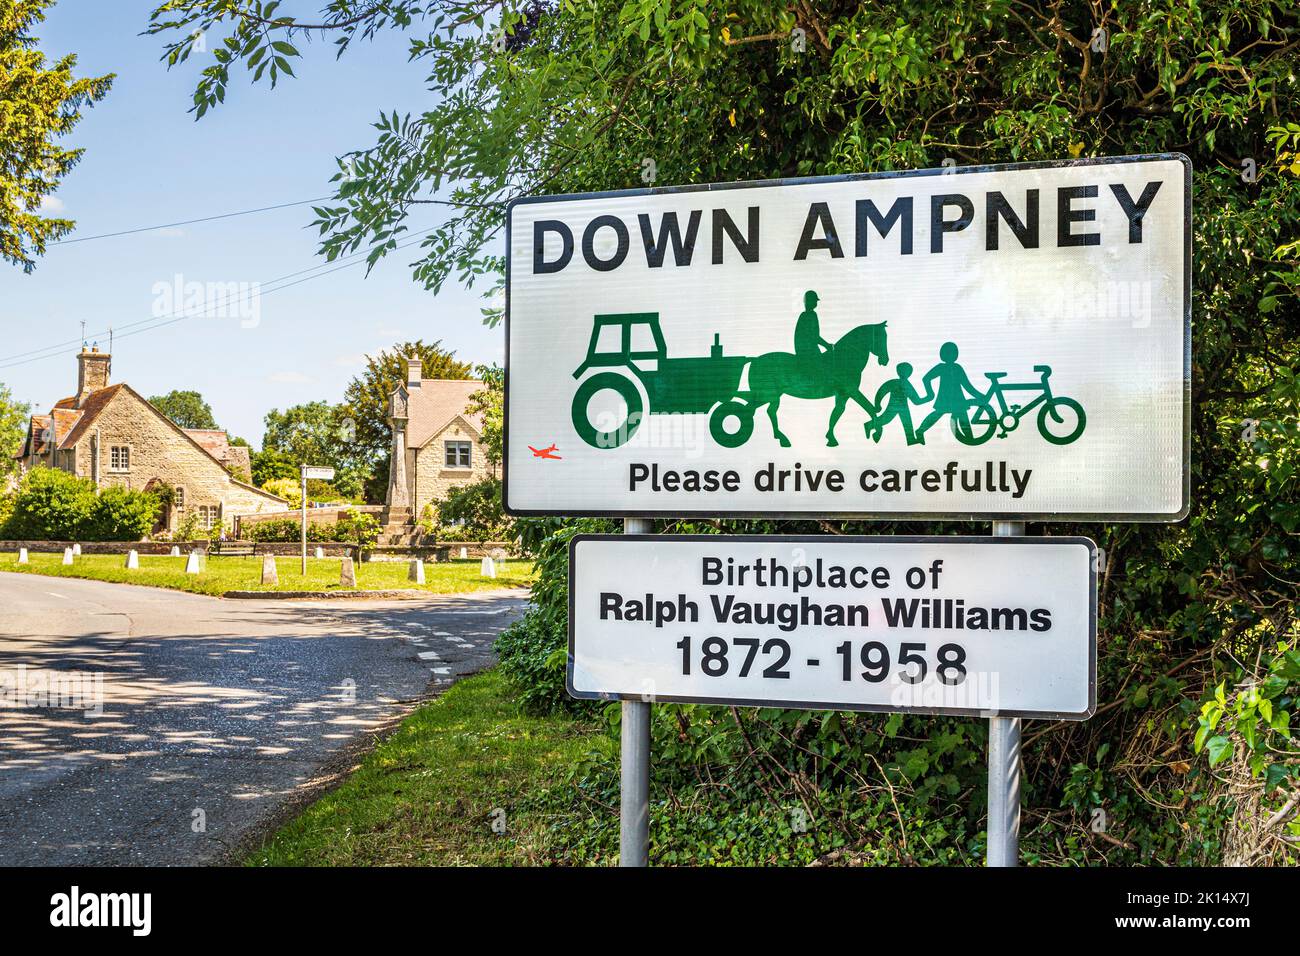 Una señal de bienvenida a la aldea Cotswold de Down Ampney, Gloucestershire, Reino Unido. Ralph Vaughan Williams nació en el antiguo Vicarage en 1872. Foto de stock